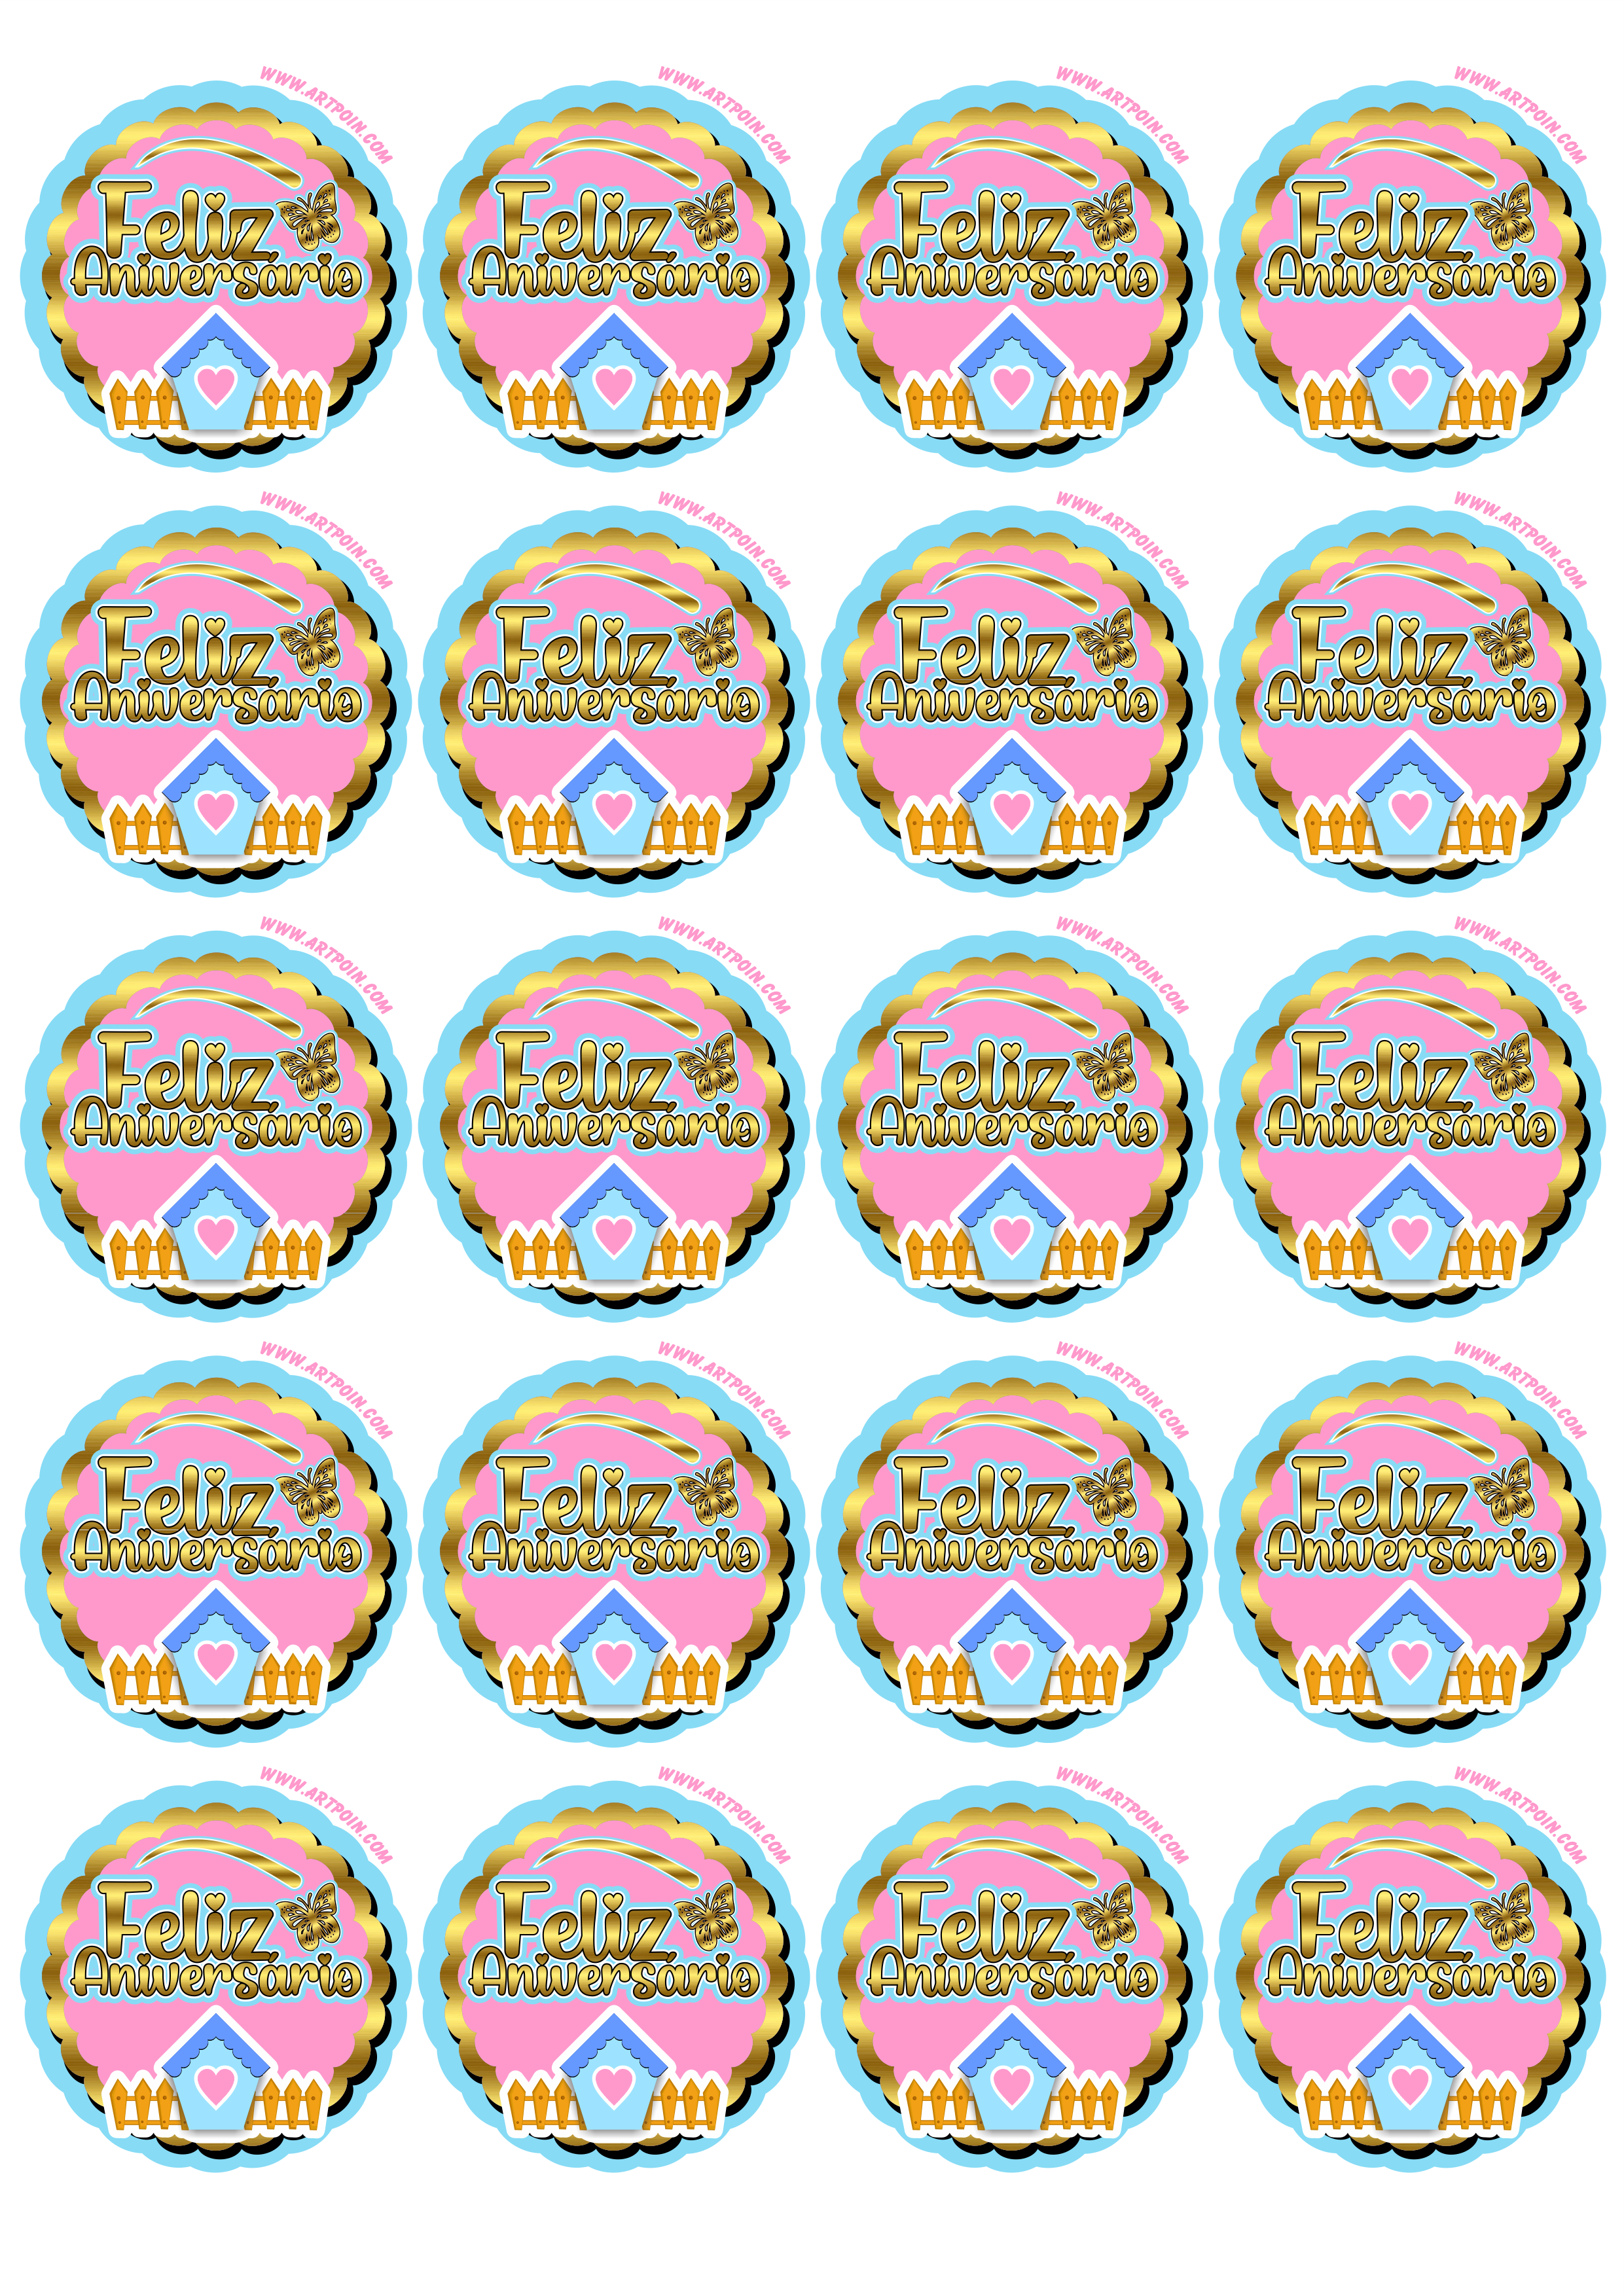 Jardim encantado feliz aniversário dourado azul e rosa com casinha borboleta adesivo tag sticker painel 20 imagens png